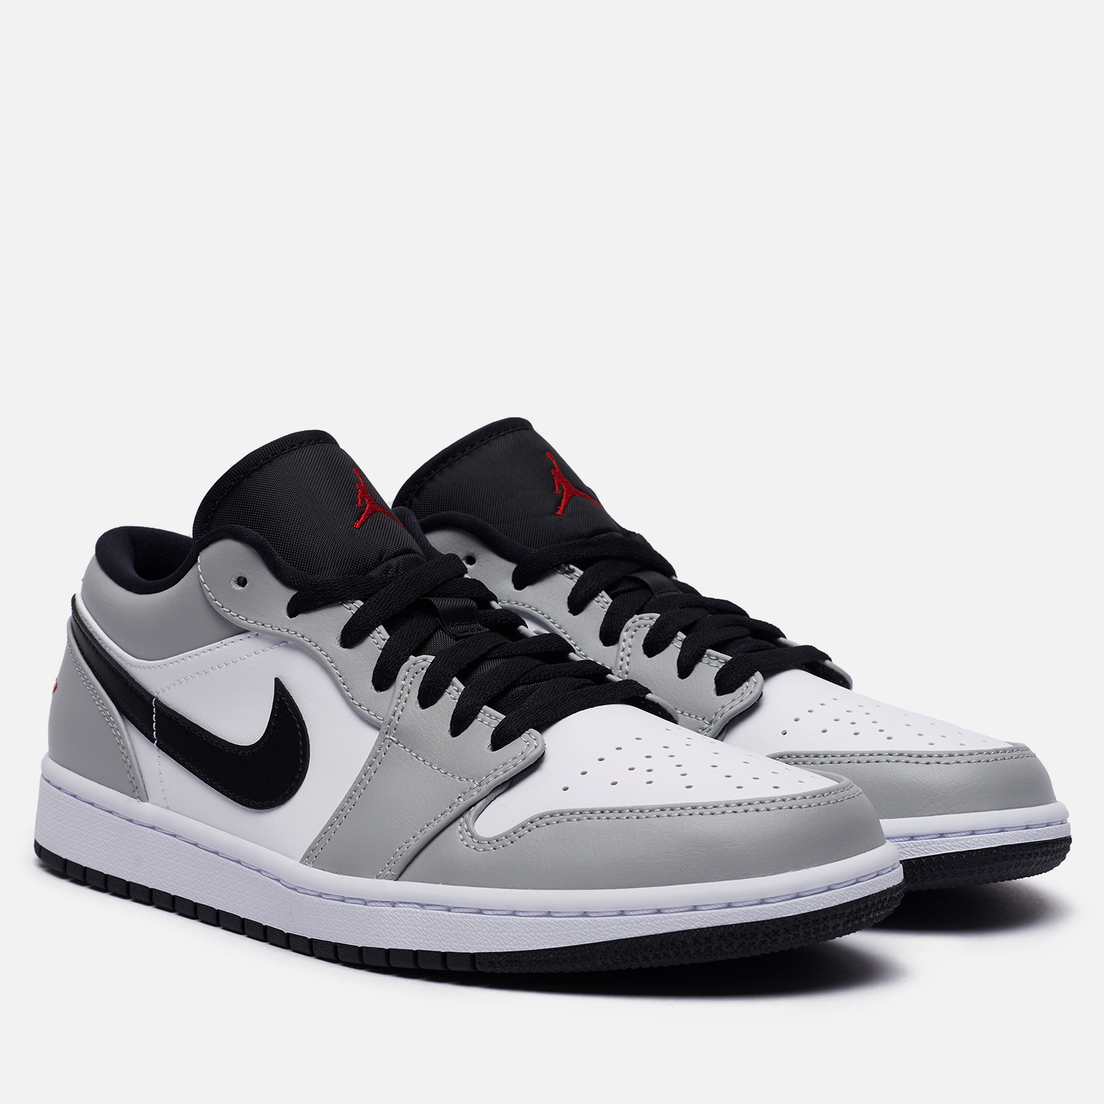 Air jordan 1 low оригинал. Nike Air Jordan 1 Low Grey White Black. Nike Air Jordan 1 Low Smoke Grey. Nike Air Jordan 1 Low Grey. Nike Air Jordan 1 Low.